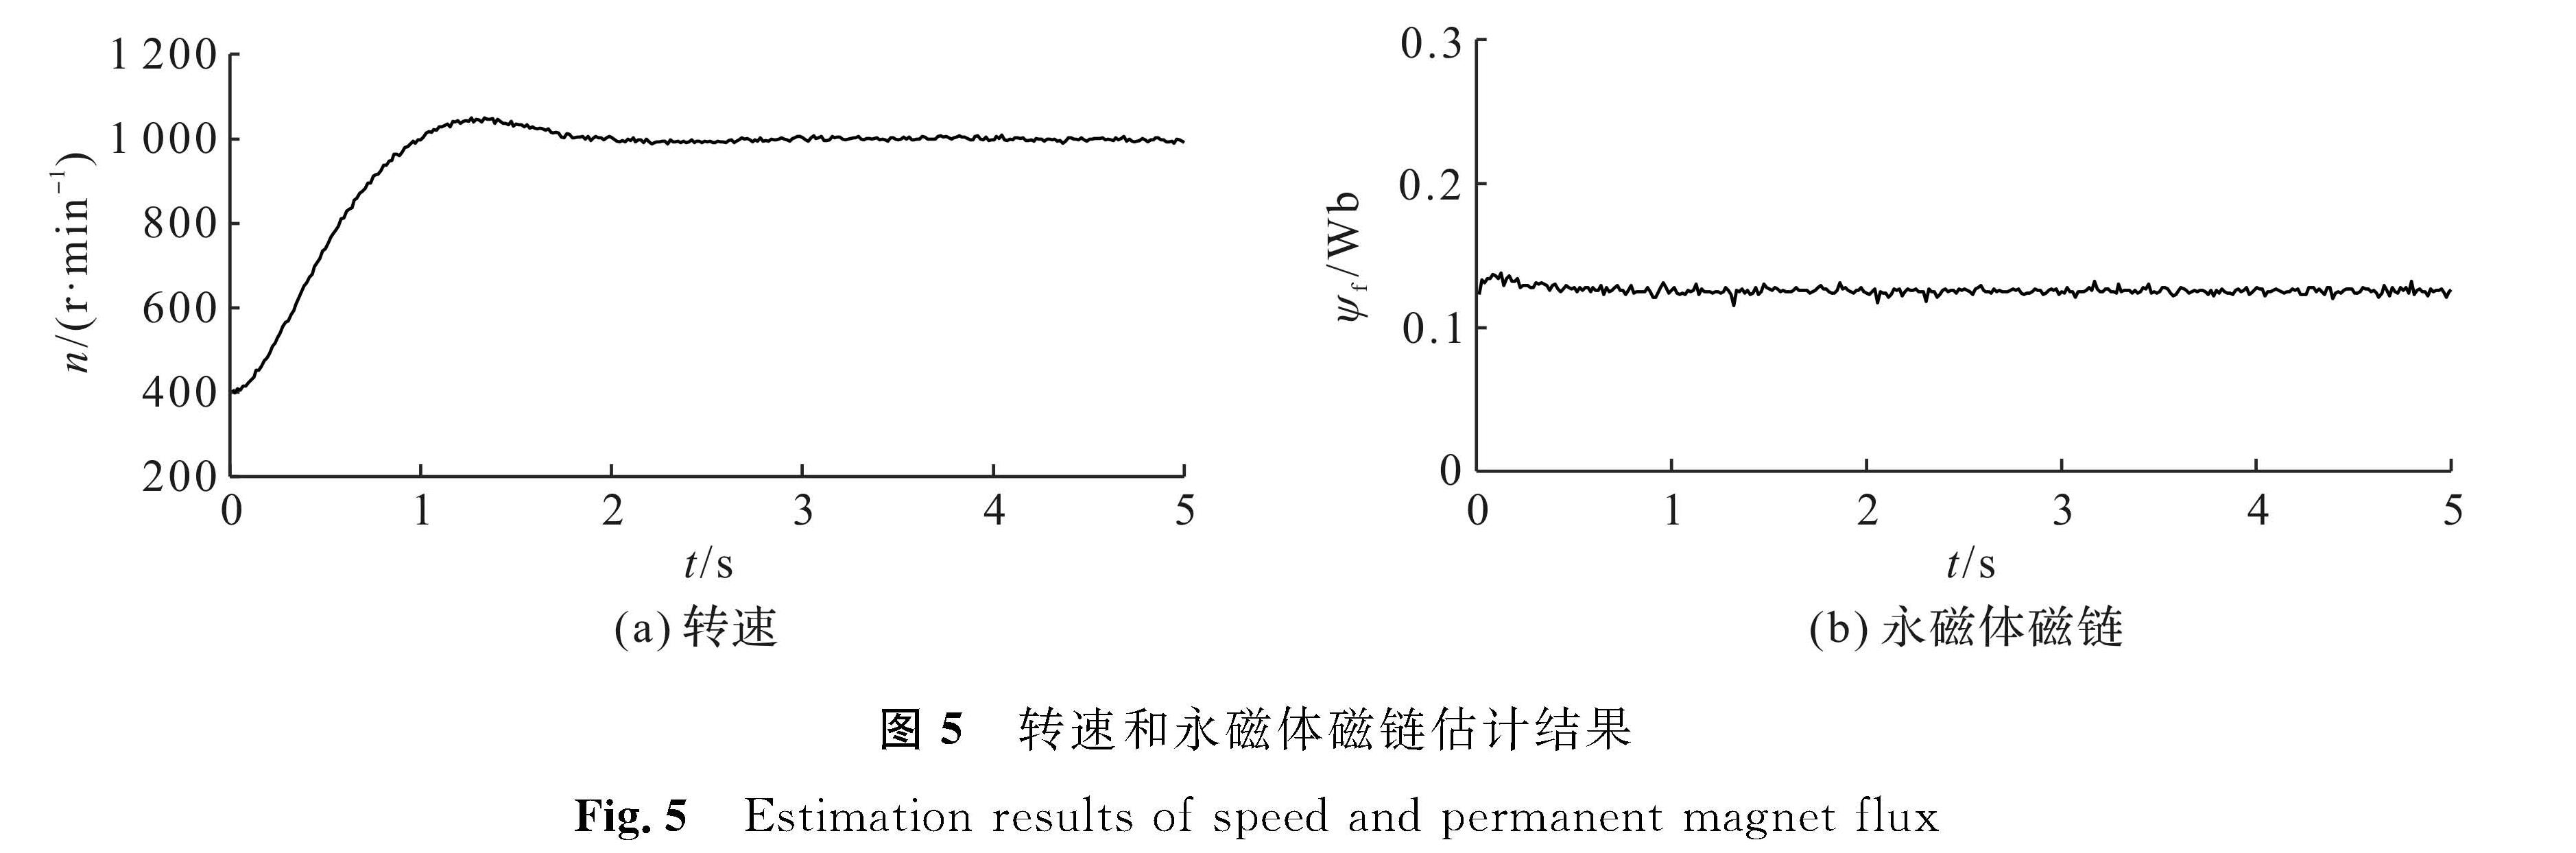 图5 转速和永磁体磁链估计结果<br/>Fig.5 Estimation results of speed and permanent magnet flux